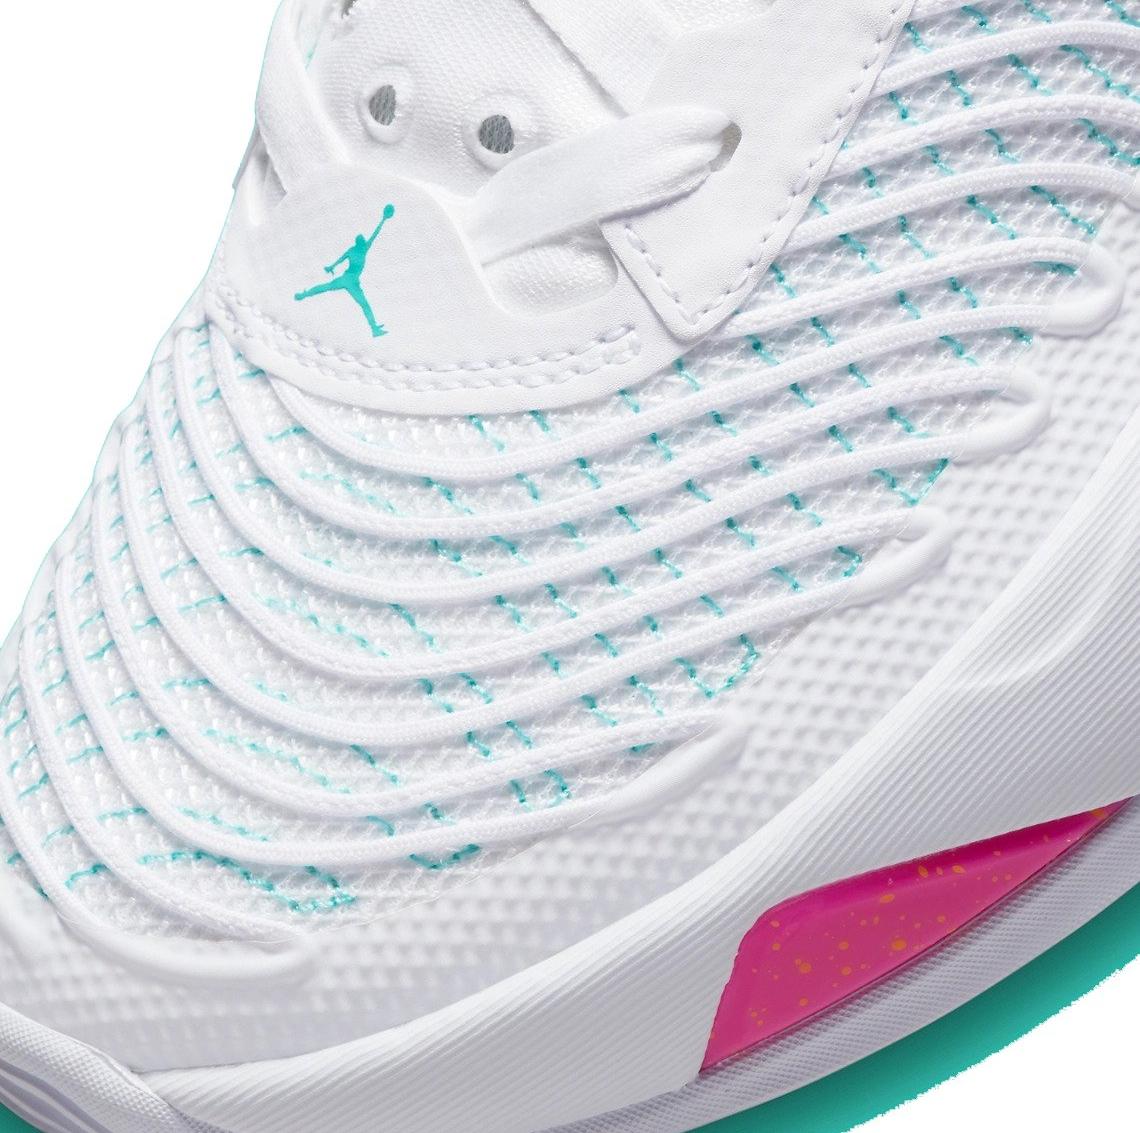 Sneakers Release – Jordan Luka 1 “Fire Pink/Dynamic Turquoise” Men’s ...